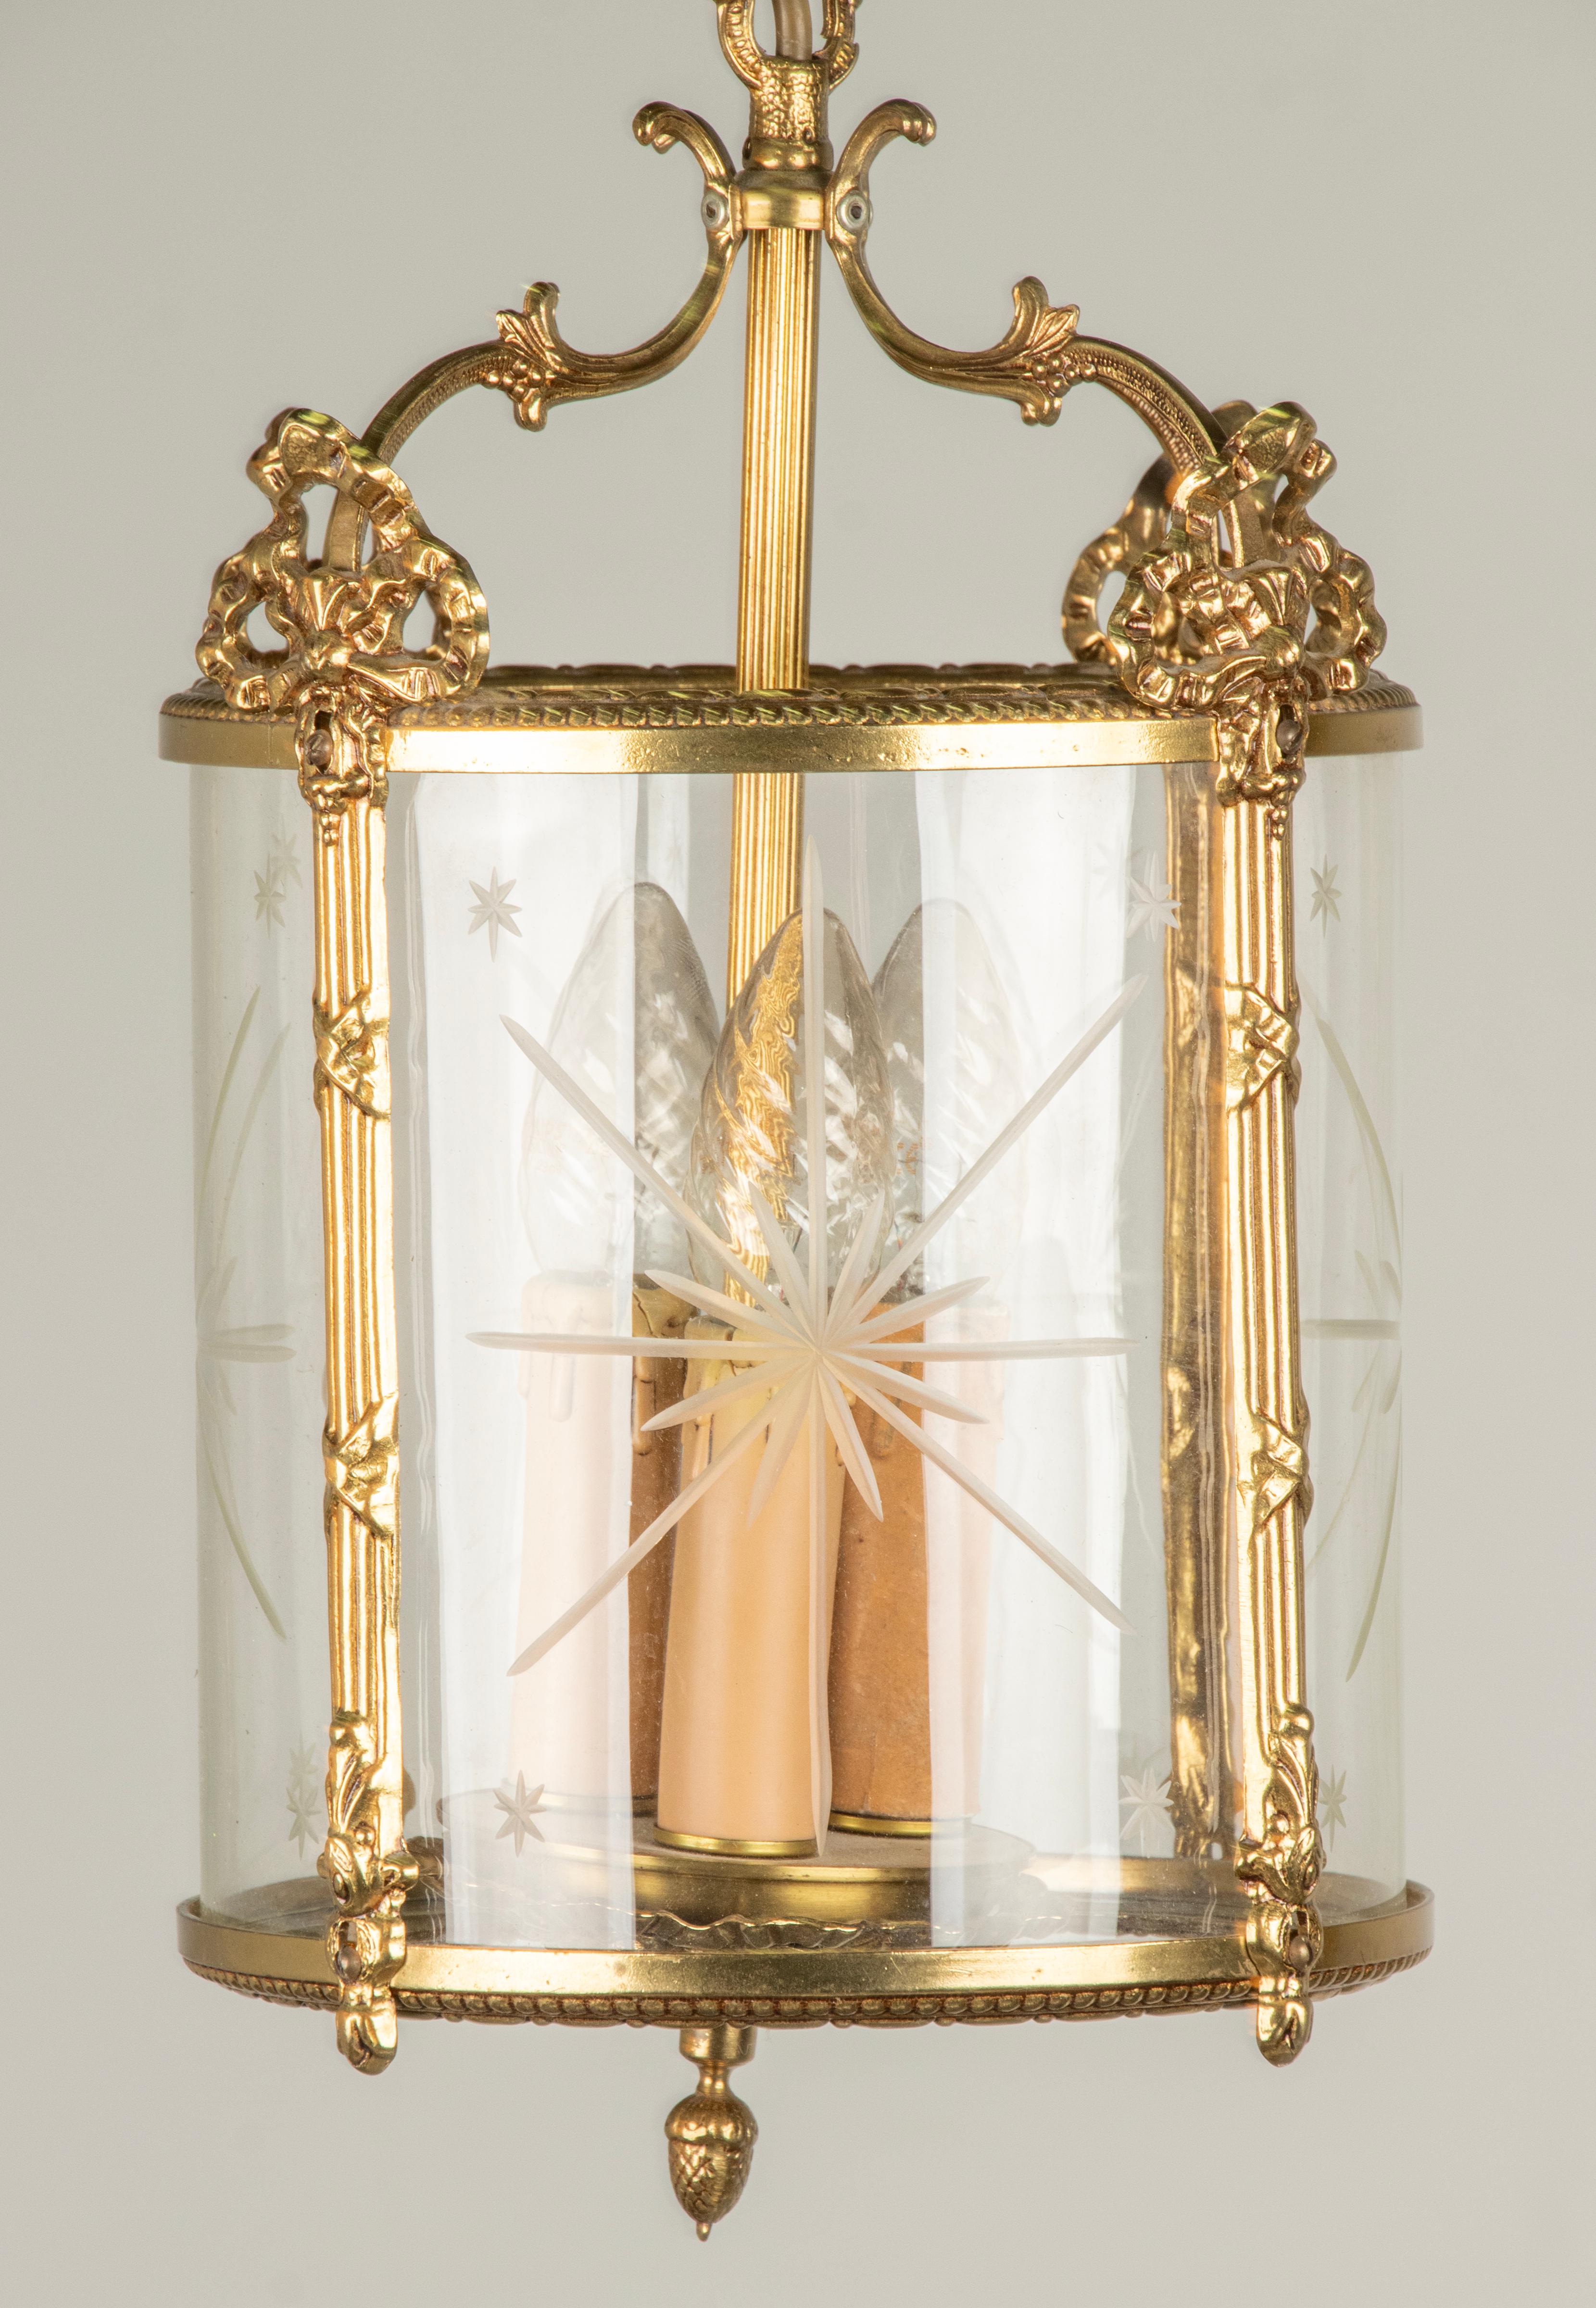 Lampe-lanterne en laiton de style Louis XVI. Décorés avec des rubans et des nœuds. A l'intérieur, un abat-jour en verre avec un motif d'étoiles taillées. A l'intérieur, il y a de la place pour 3 douilles pour des ampoules E14. 
Fabriqué en Belgique,